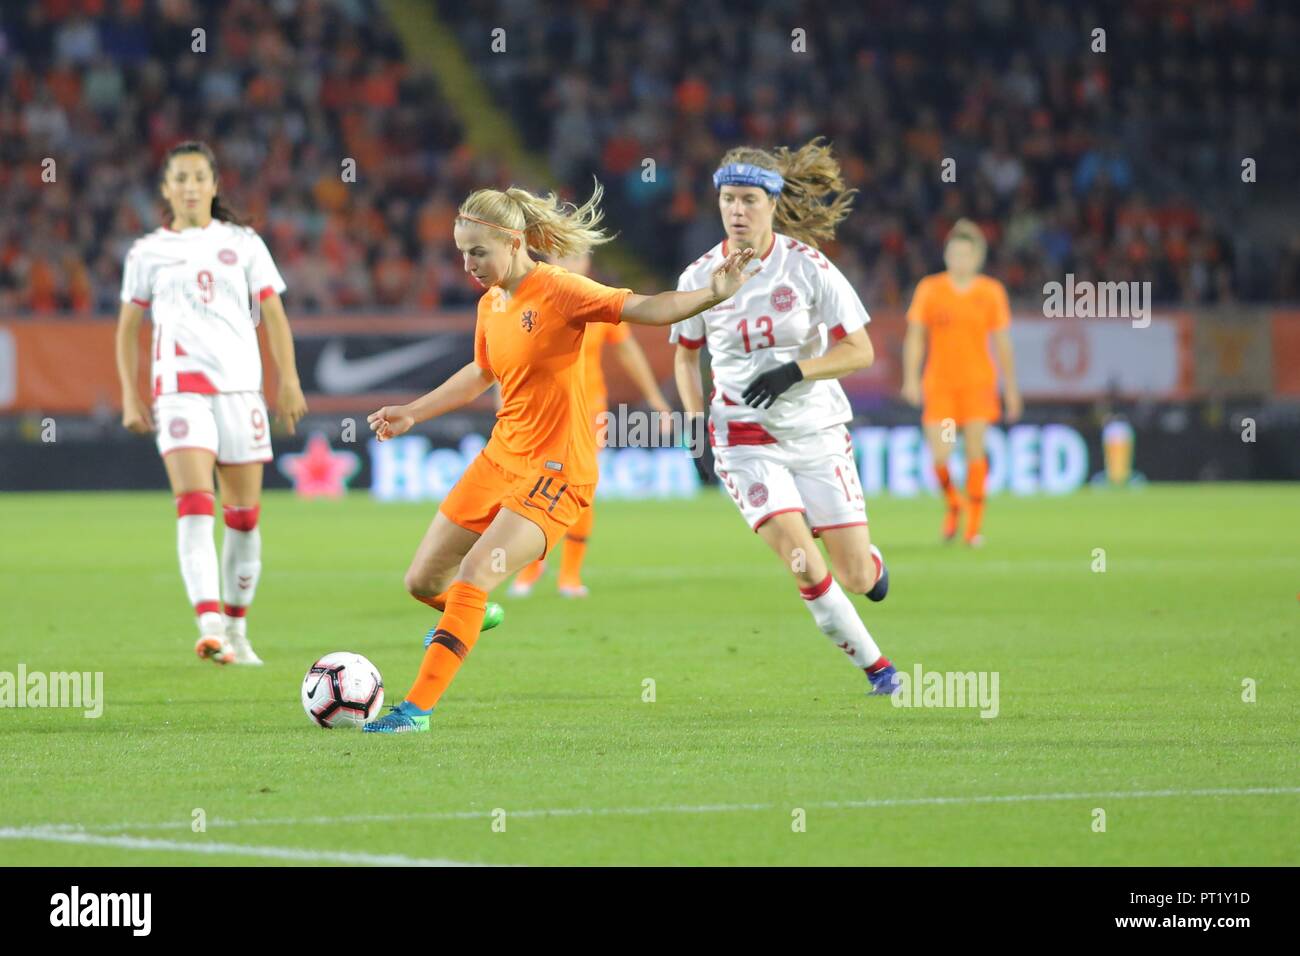 Paesi Bassi utente malintenzionato, Jackie Groenen, corre con la palla durante la partita contro la Danimarca per la qualificazione per il campionato mondiale di calcio delle donne, a Breda, 5 ottobre 2018. Foto Stock